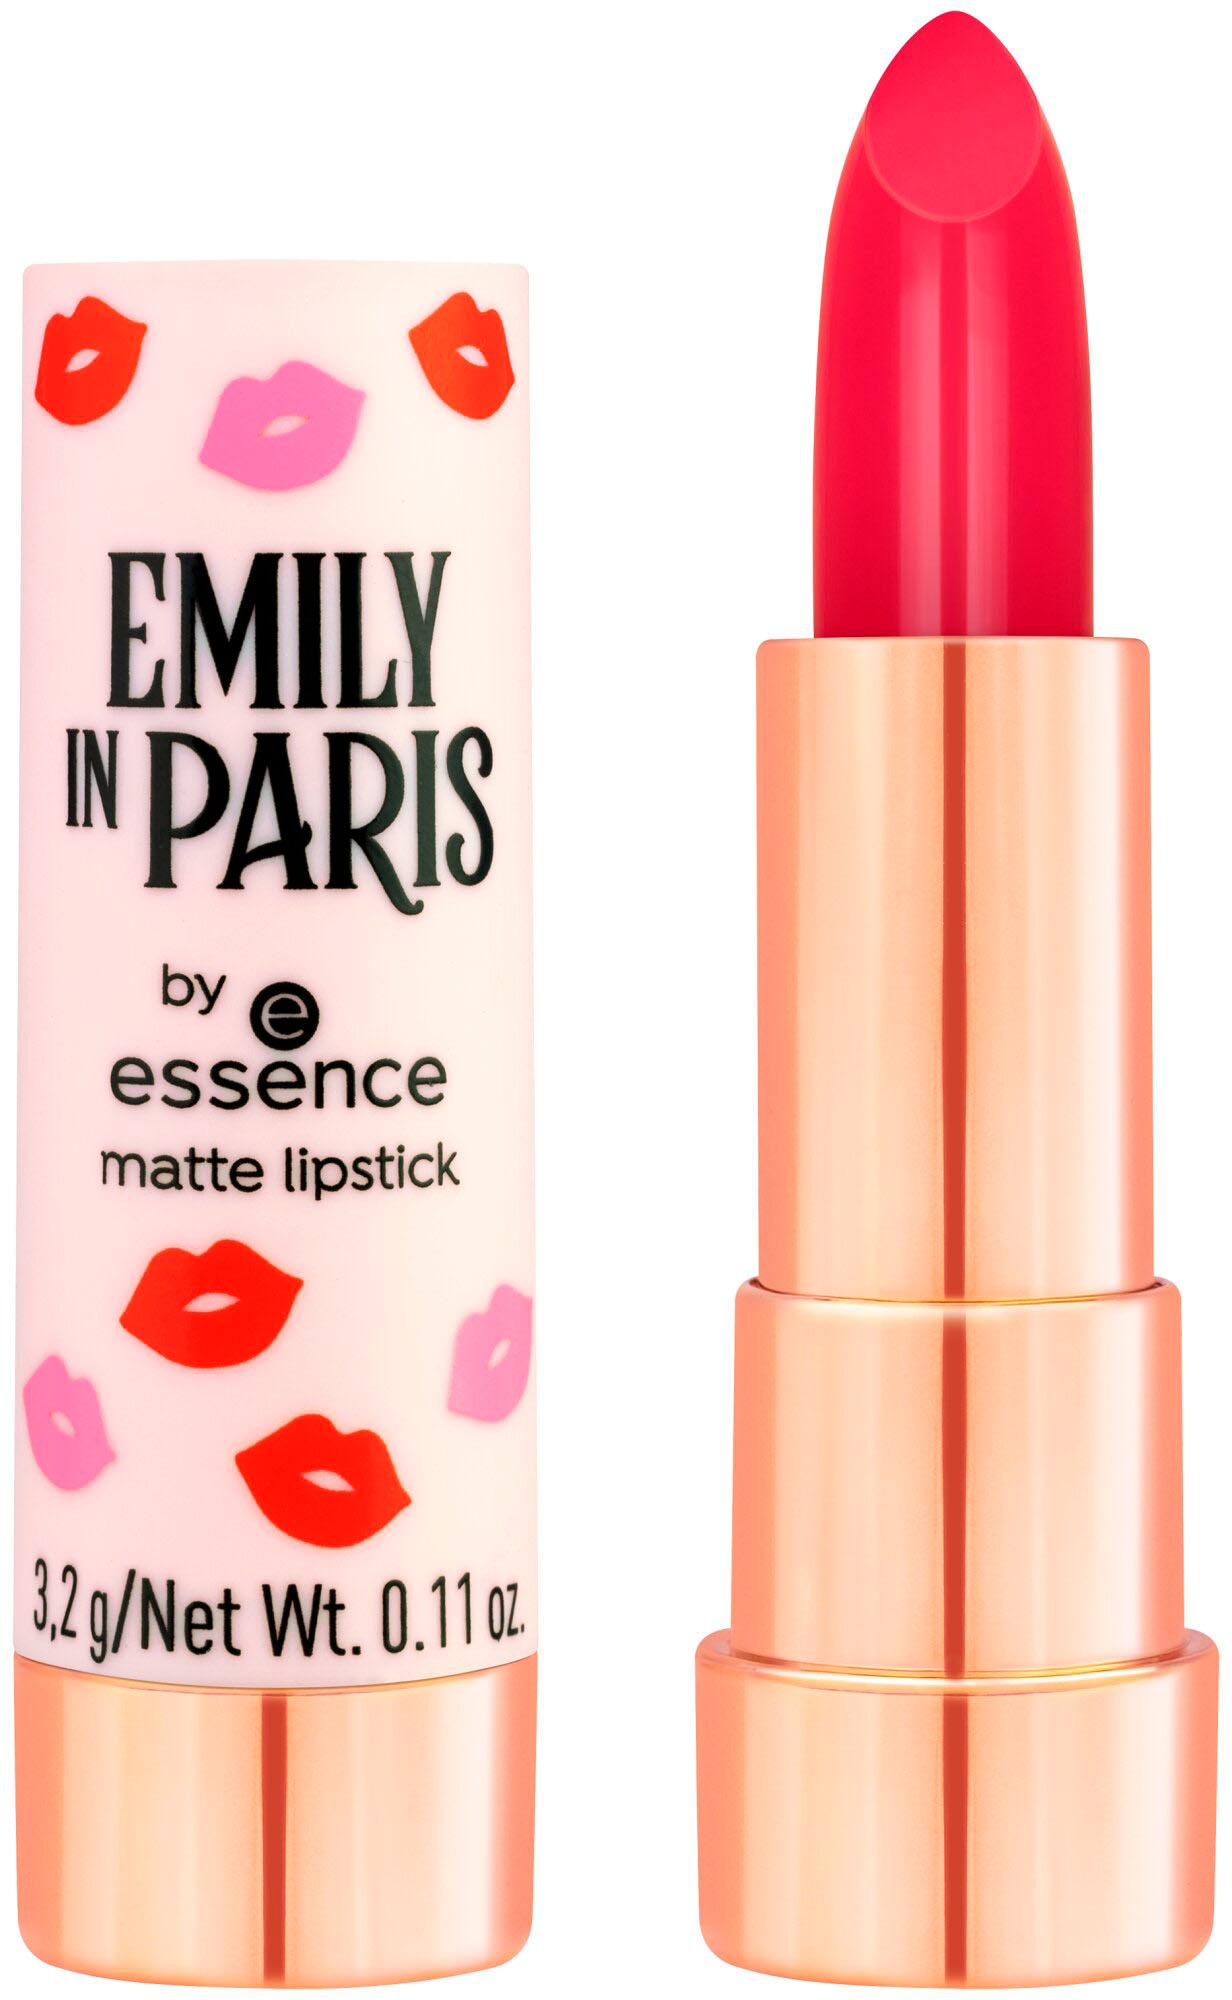 Essence Lippenstift »EMILY IN PARIS online UNIVERSAL by bei essence lipstick« matte